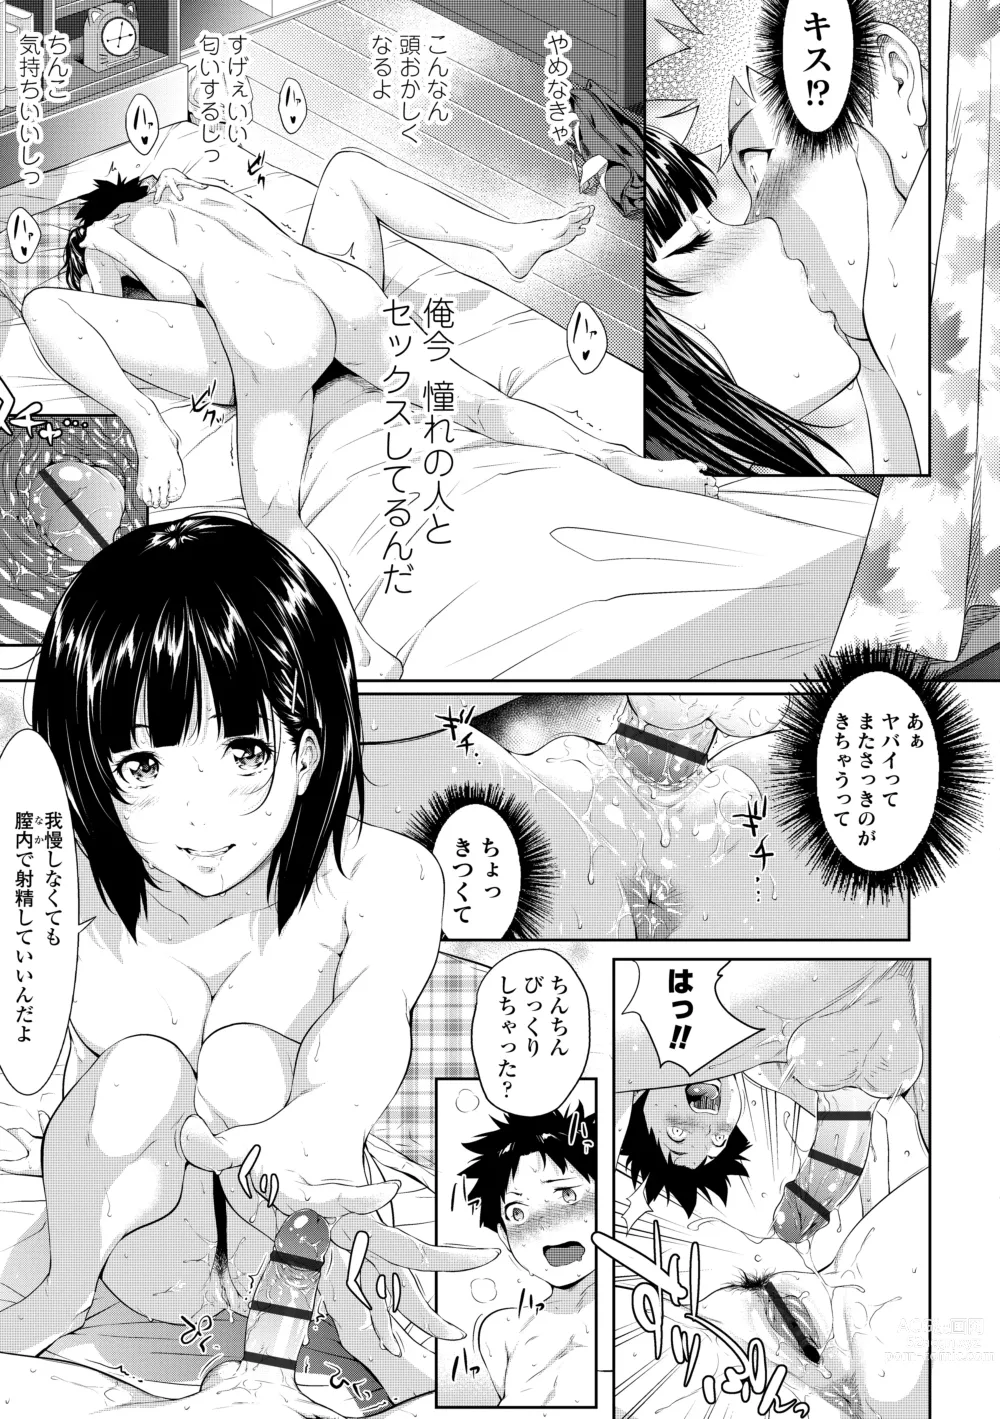 Page 233 of manga Tooi Kimi ni, Boku wa Todokanai - I cant reach you, far away.